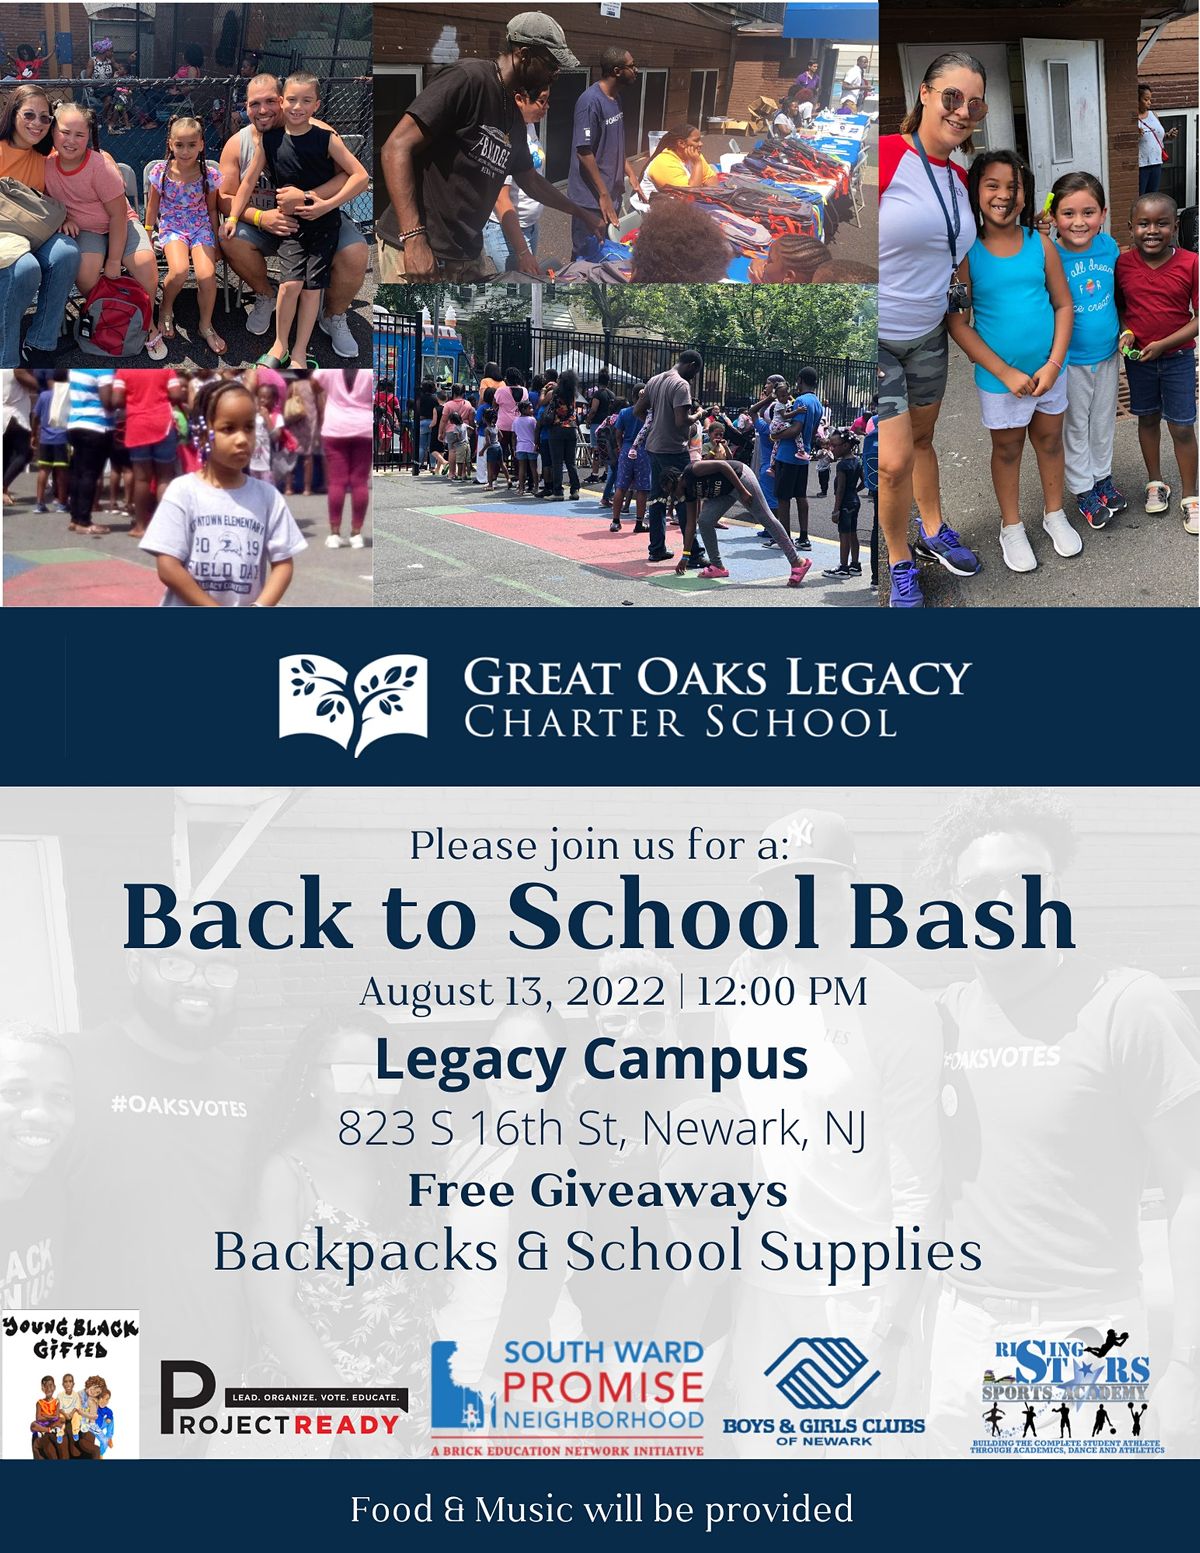 great-oaks-legacy-charter-school-back-to-school-bash-2022-newark-legacy-charter-school